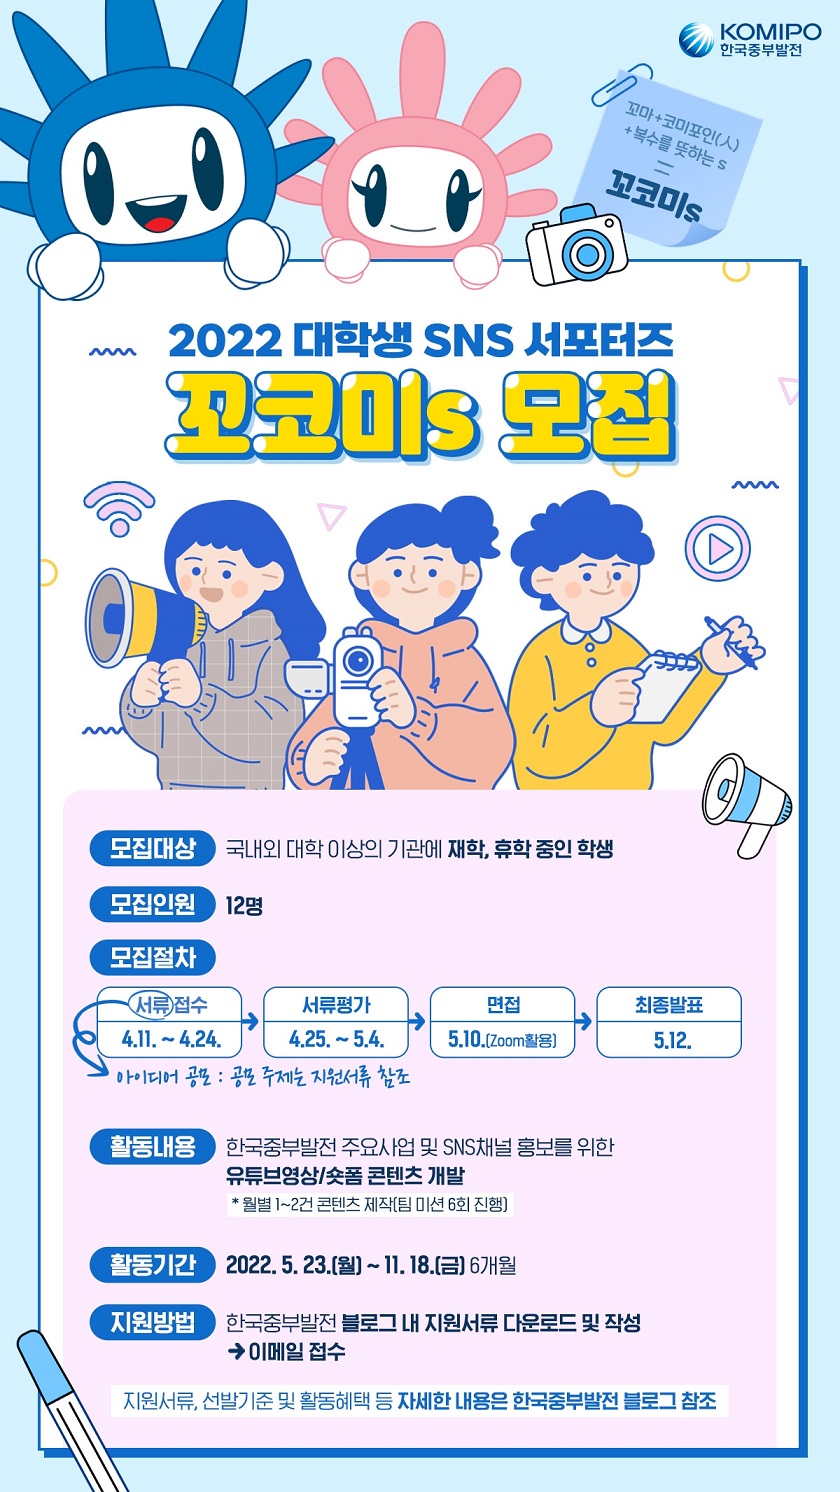 한국중부발전 2022 대학생 SNS 서포터즈 ‘꼬코미s' 모집